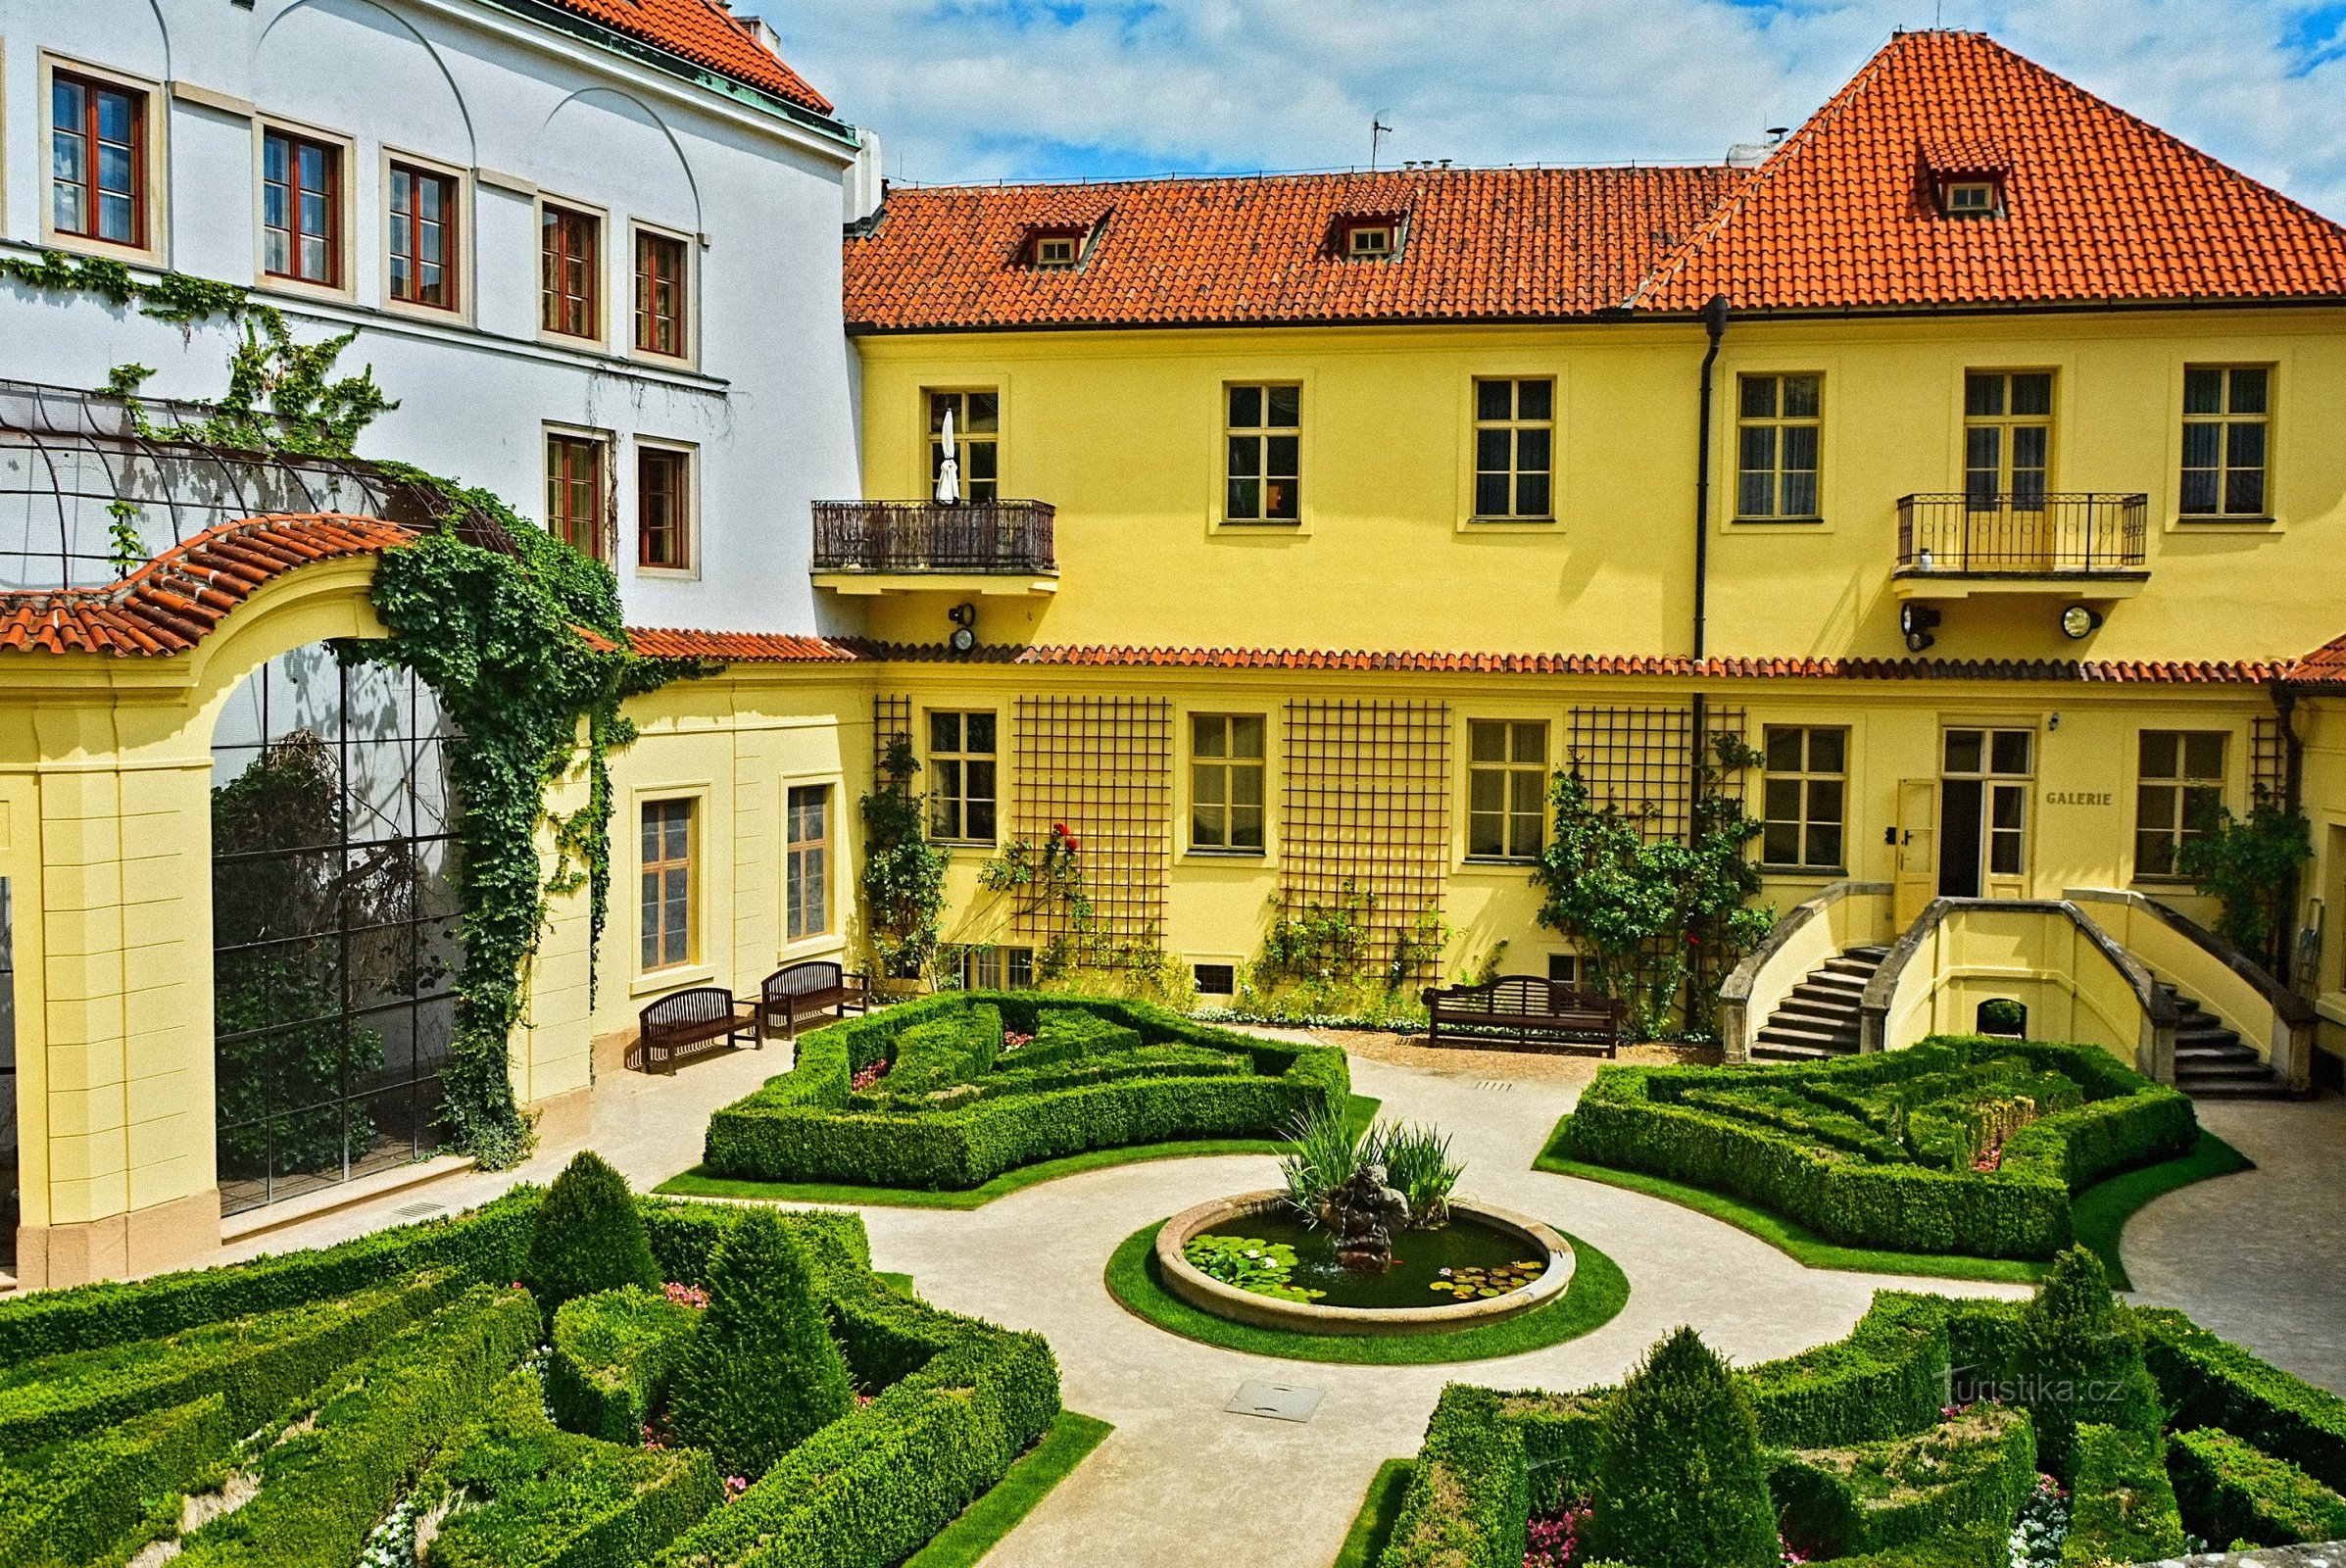 Vrtbovská сад з прекрасним видом на Прагу